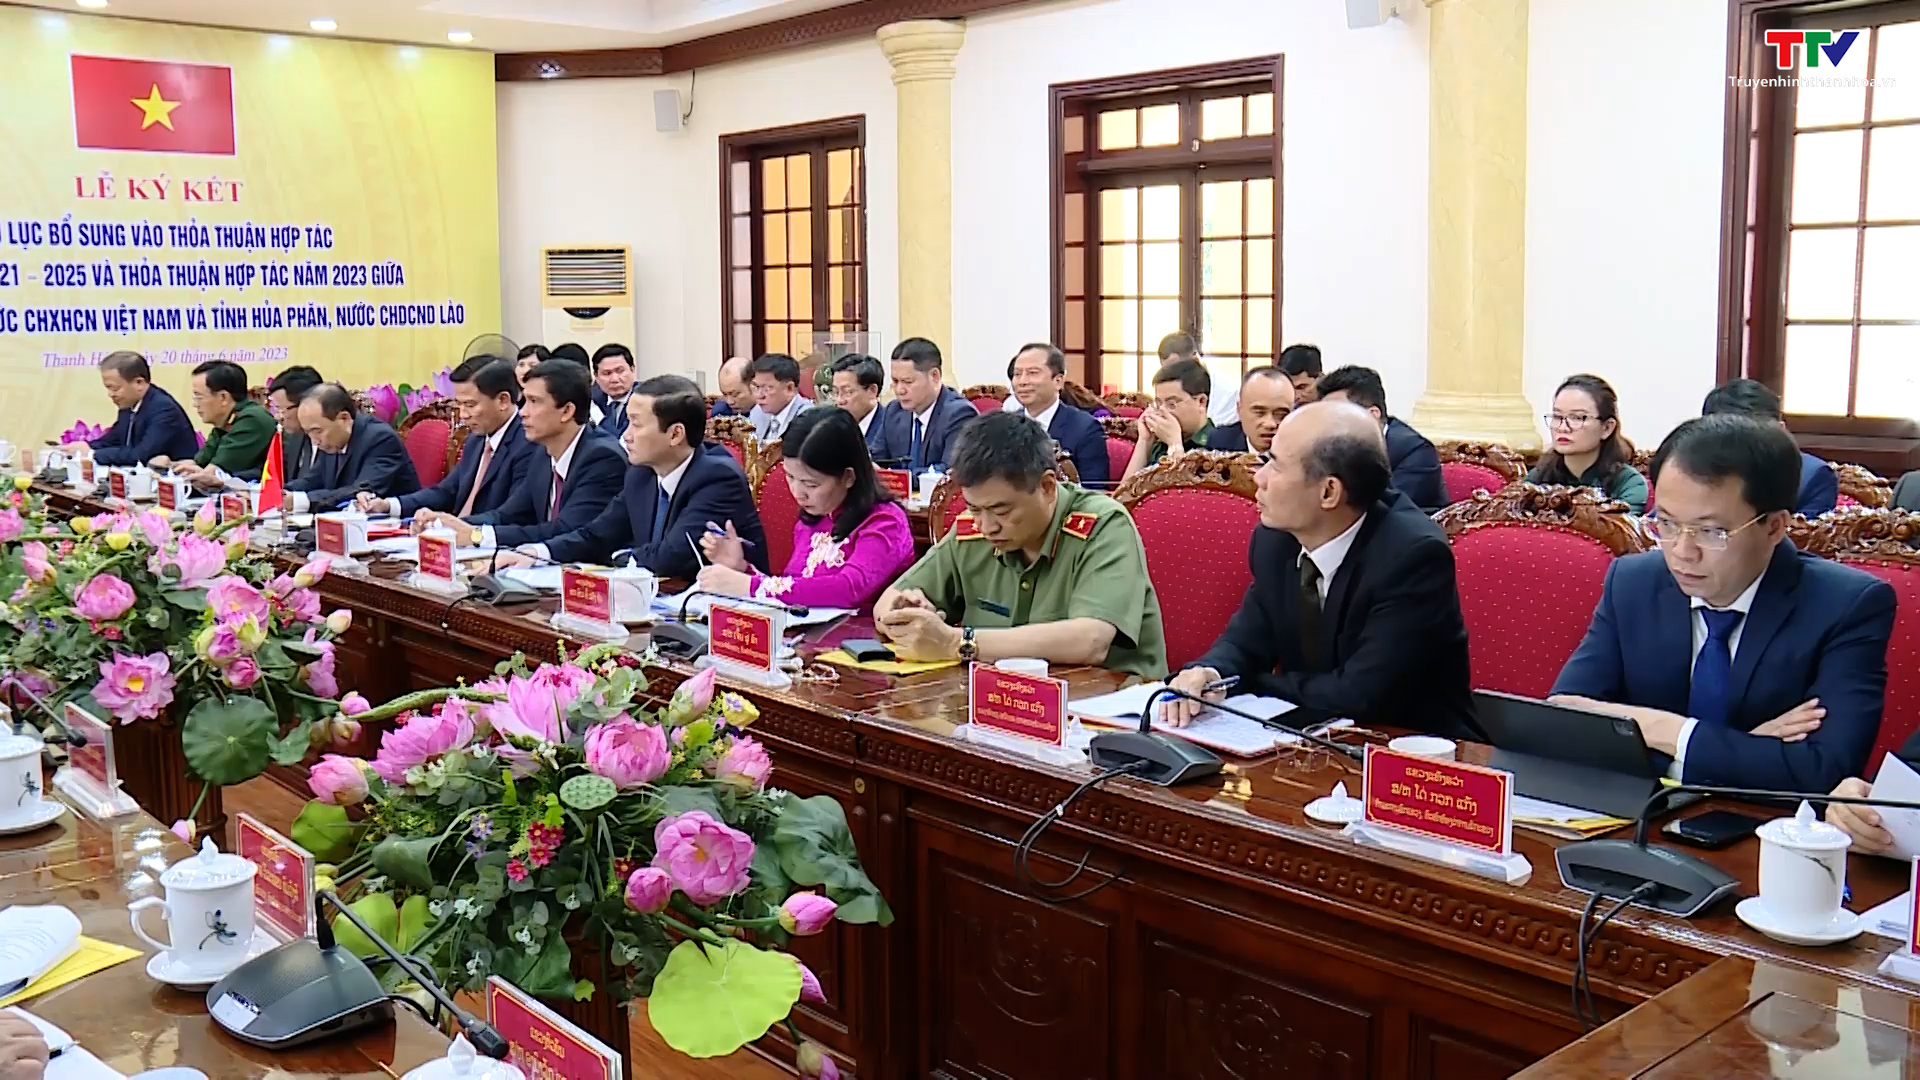 Thanh Hóa – Hủa Phăn hội đàm và ký kết thỏa thuận hợp tác năm 2023 - Ảnh 6.